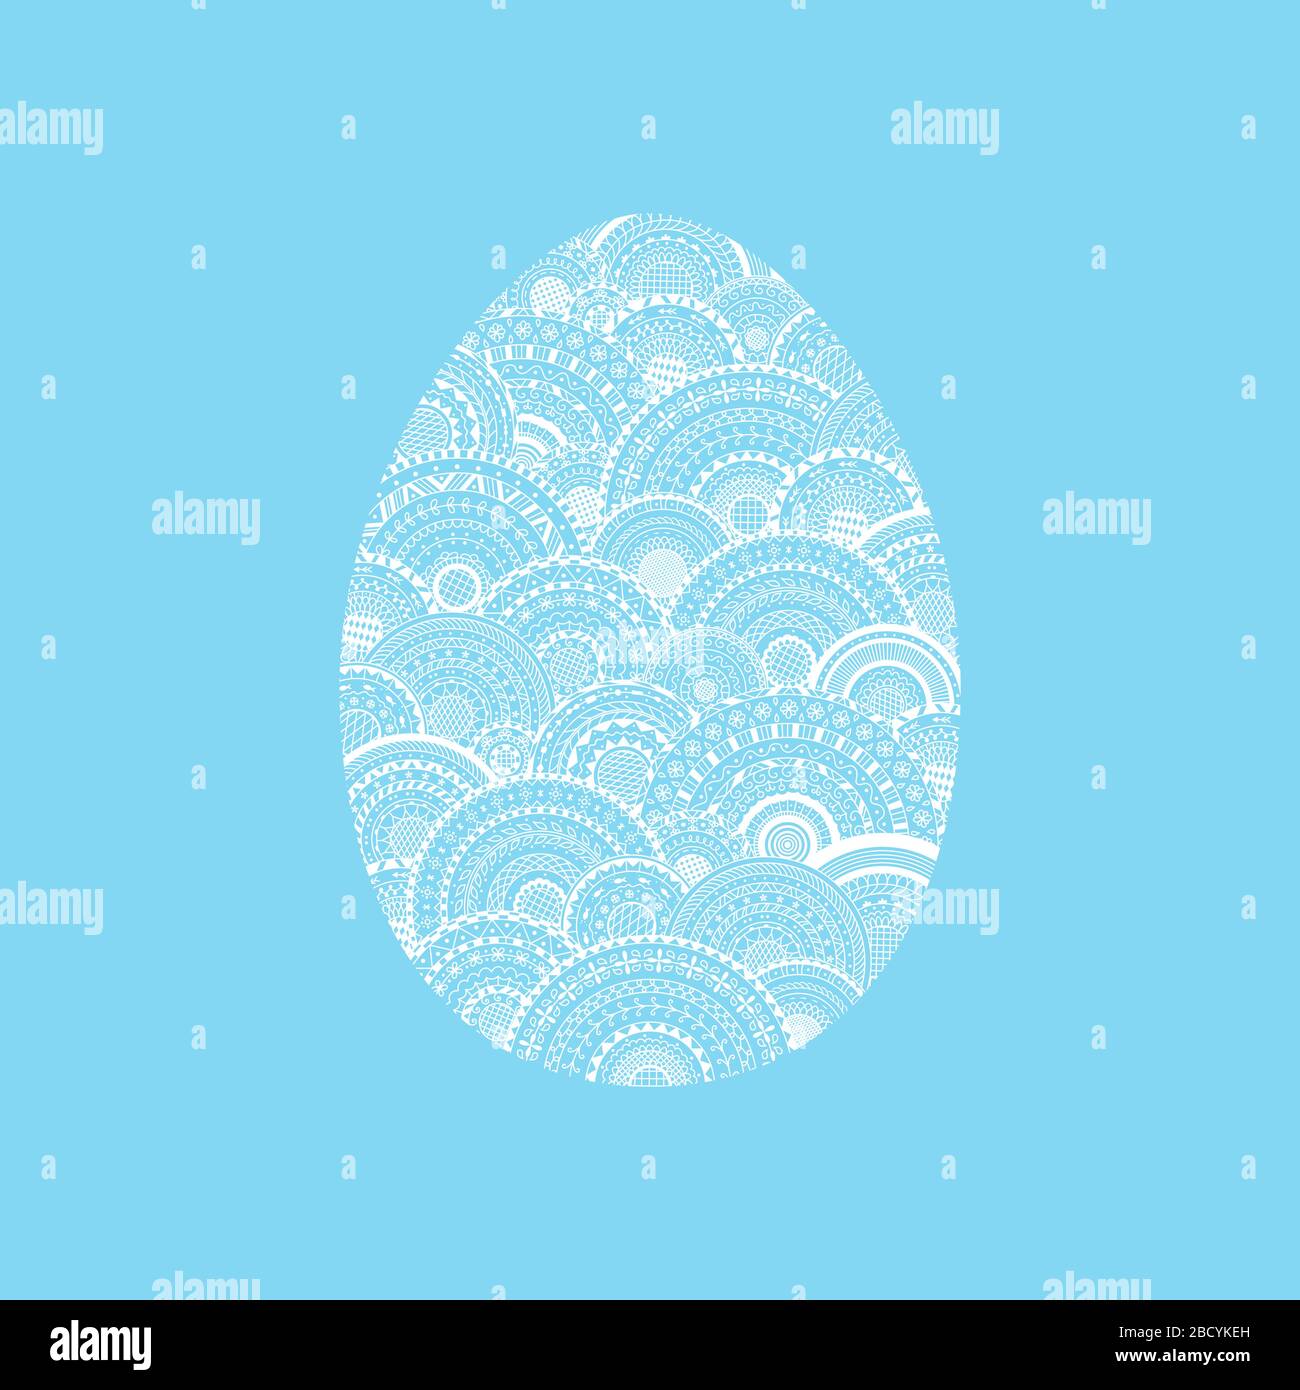 Illustration vectorielle de l'oeuf de Pâques blanc sur fond bleu. Oeuf de Pâques avec mandalas ethniques ronds à l'intérieur. Élément décoratif de Pâques pour carte de vœux Illustration de Vecteur